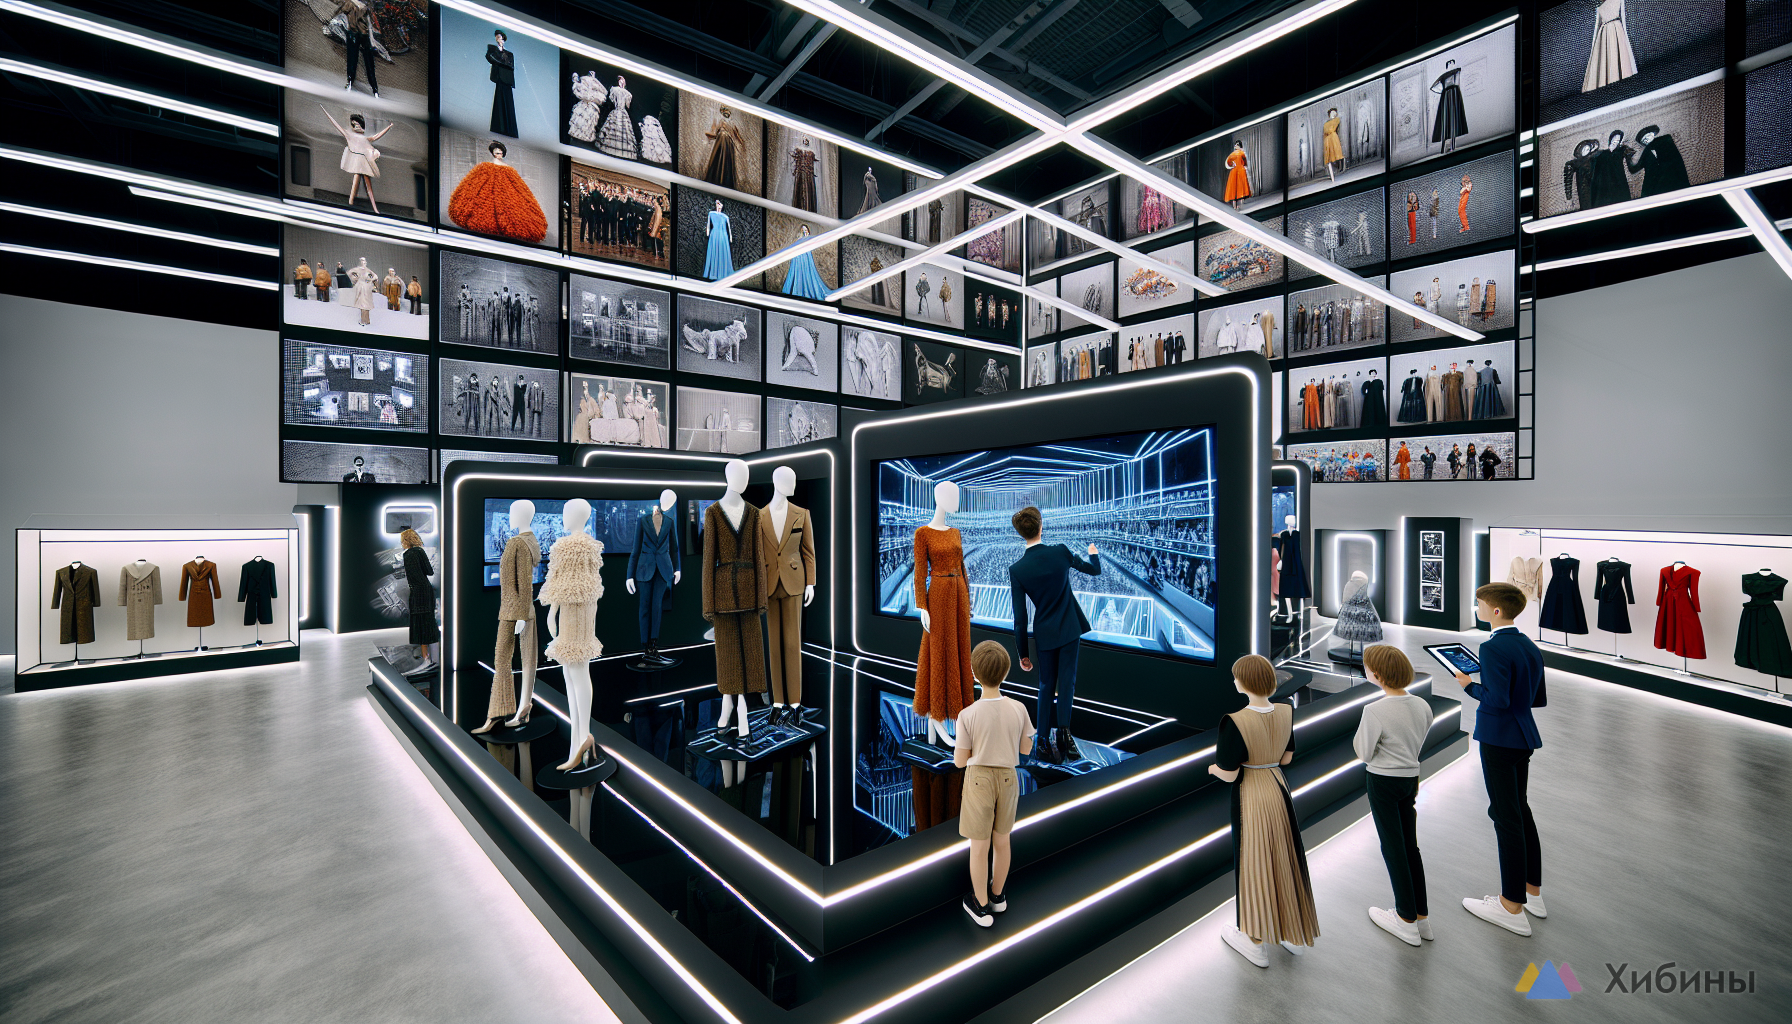 «Мода и дизайн: творческий опыт» — интерактивная выставка в Мурманске